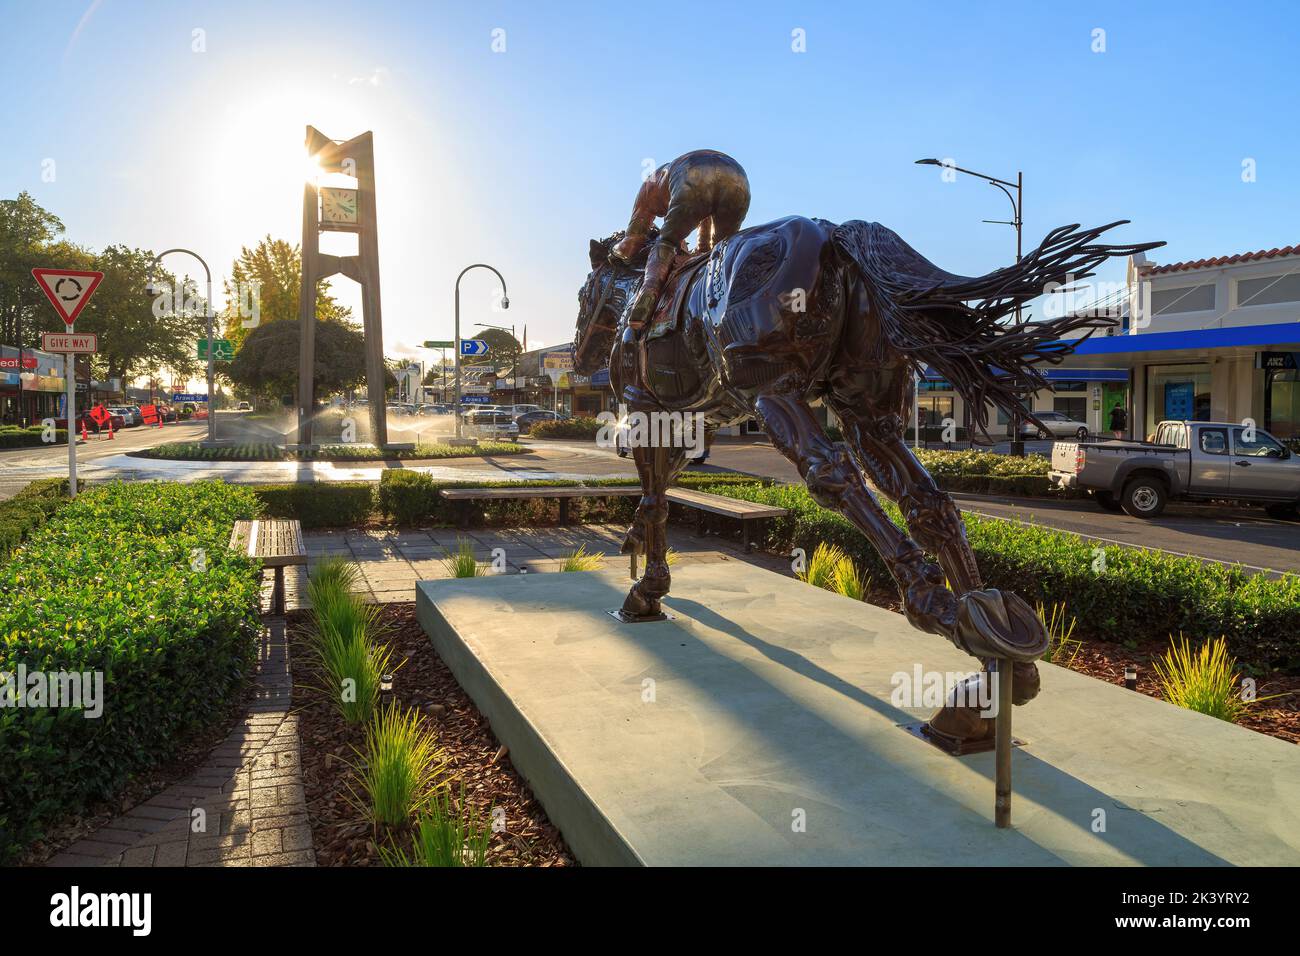 Una estatua de un caballo y un jinete, hecho de chatarra reciclada, en la calle principal de Matamata, Nueva Zelanda Foto de stock